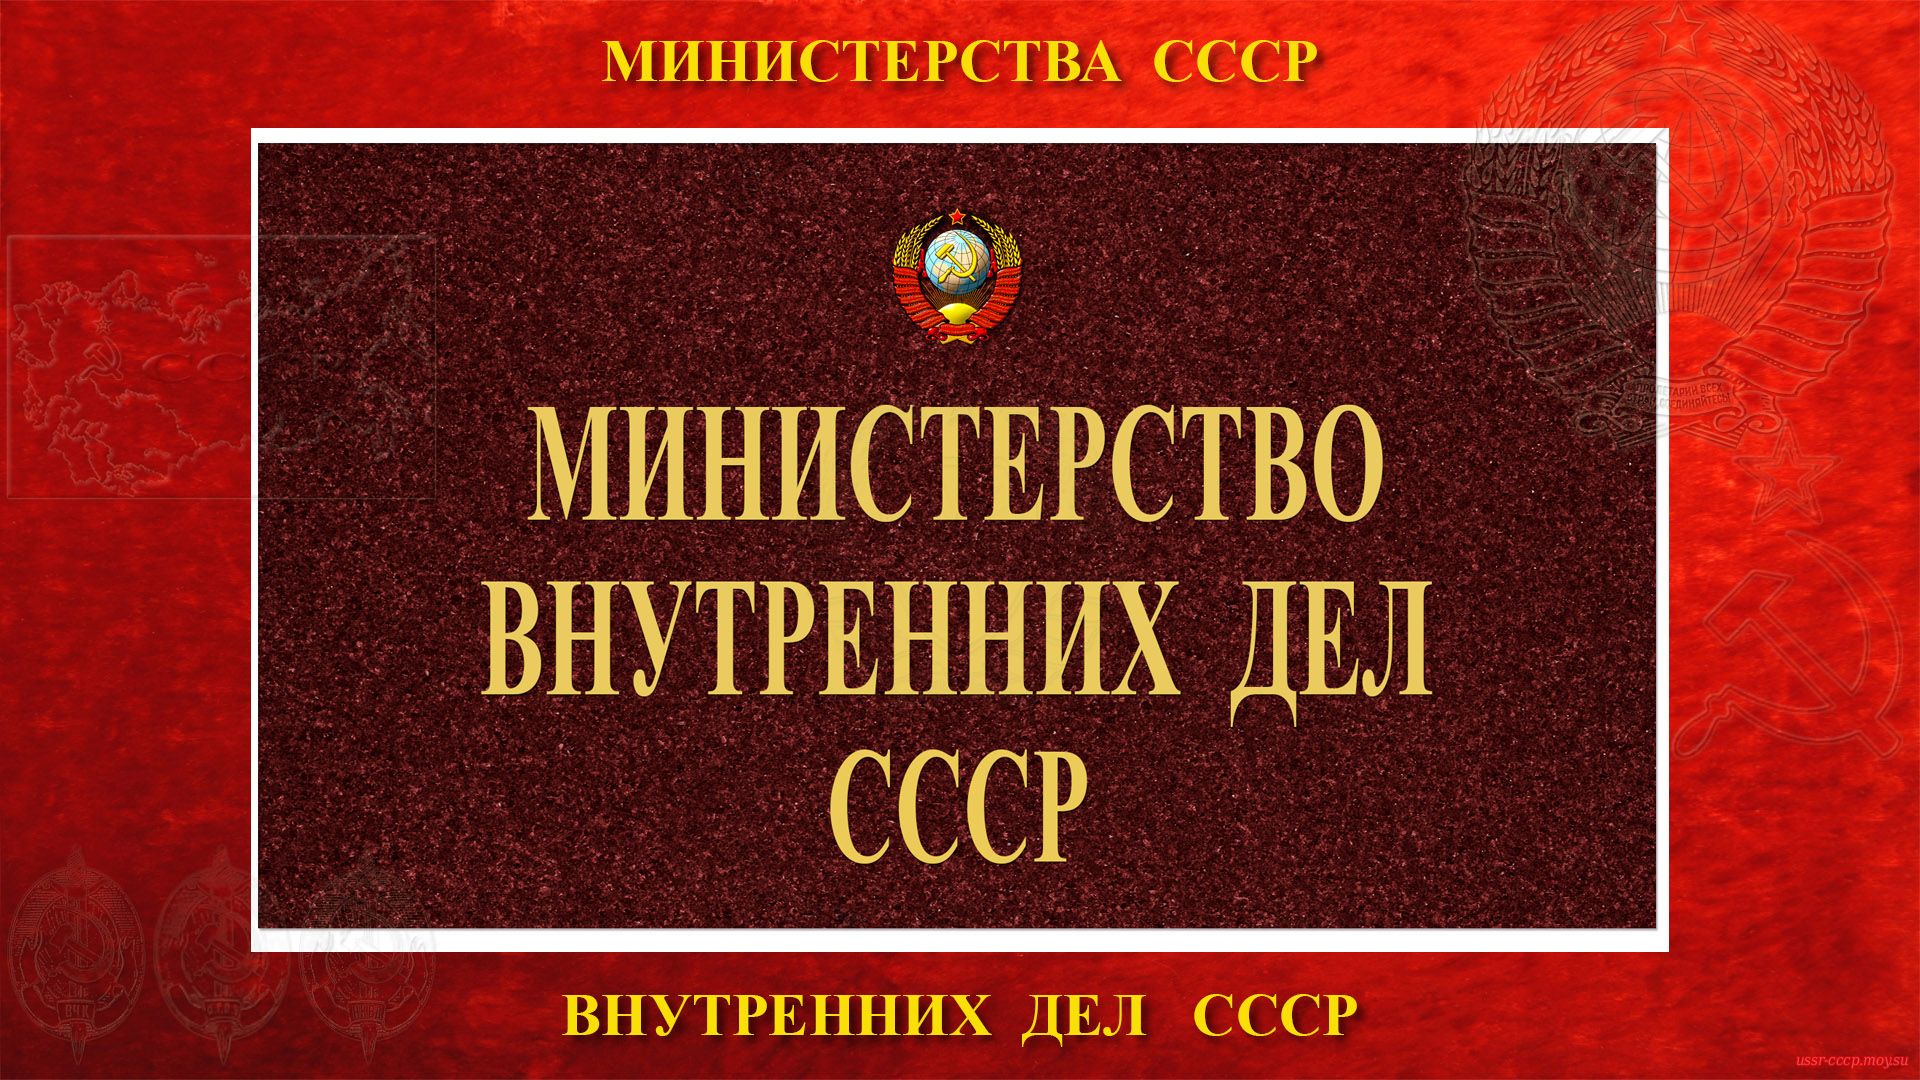 МВД СССР — Министерство внутренних дел СССР (15.03.1946 — 15.08.1960 и 25.11.1968 — 25.12.1991)